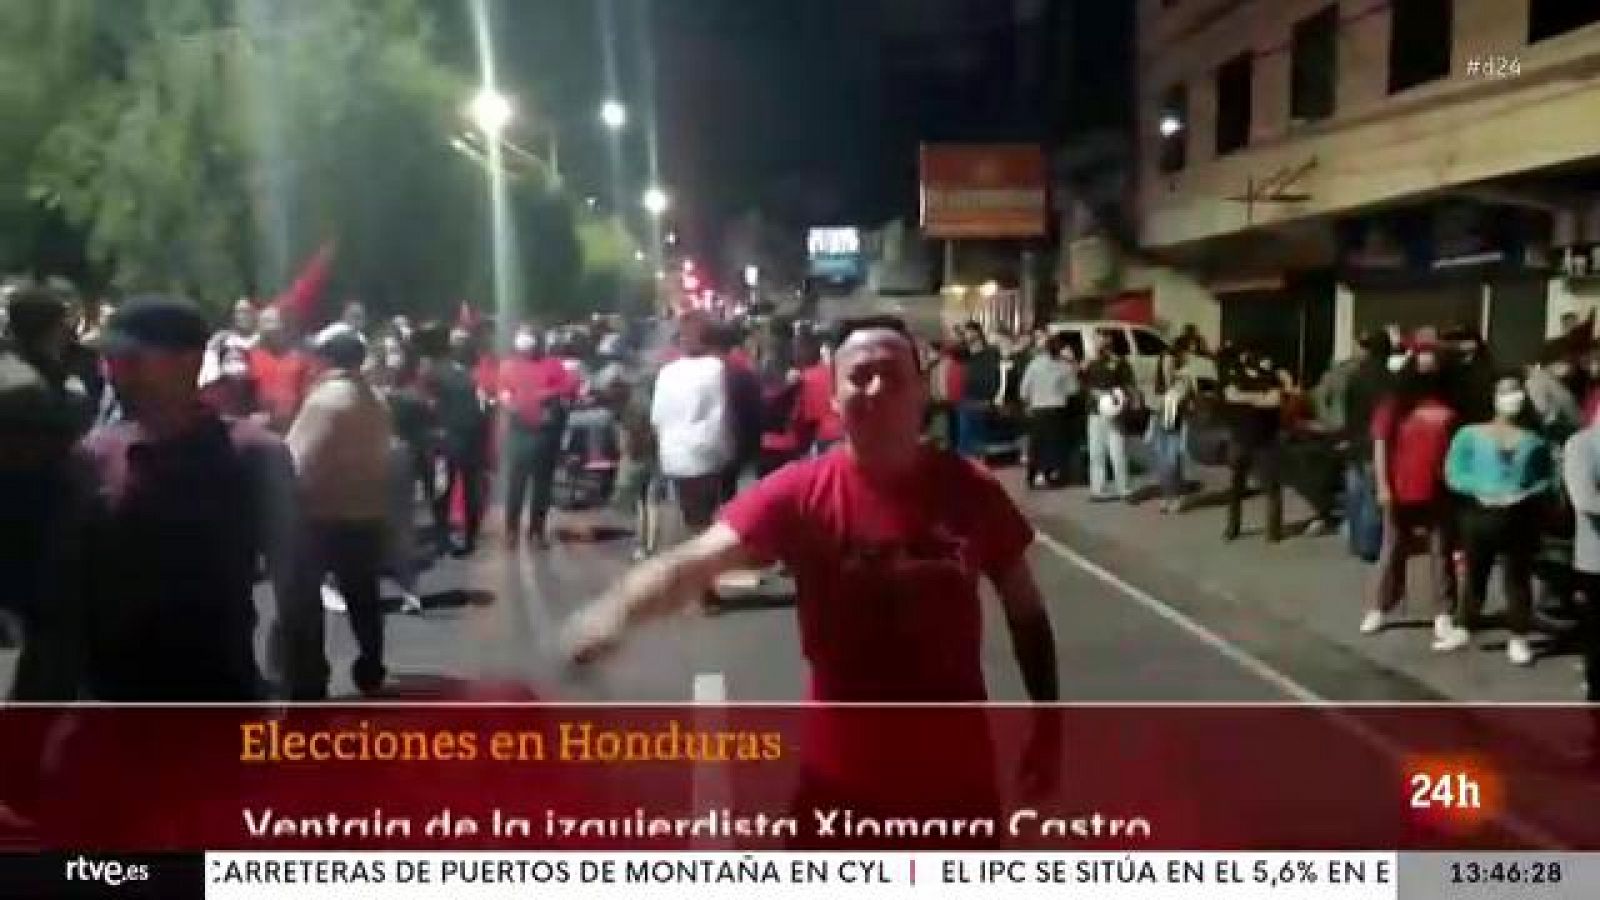 La candidata de la Ia izquierda, Xiomara Castro, se proclama ganadora en las elecciones en Honduras - Ver ahora